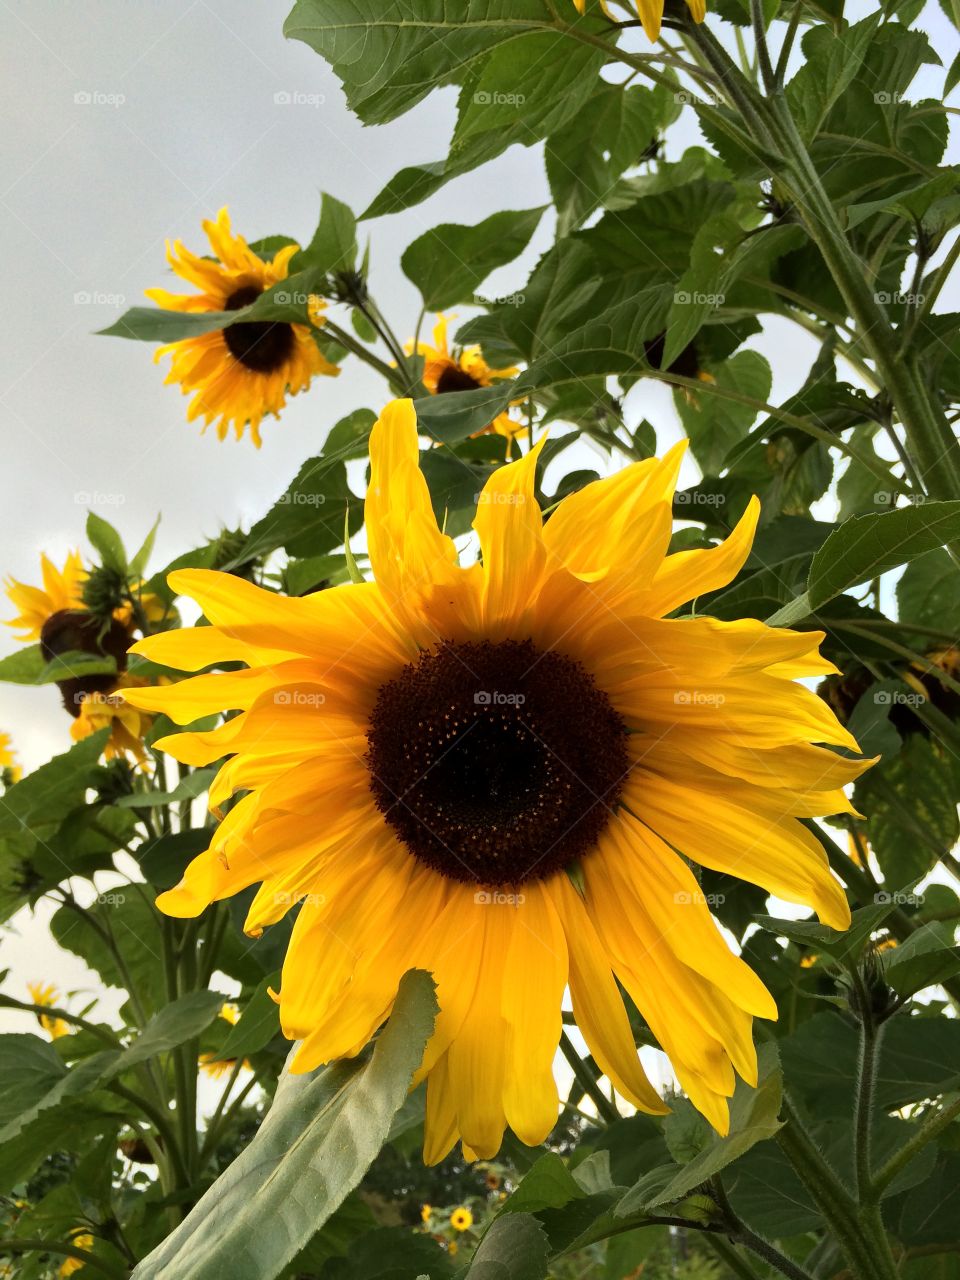 Sunflowers. Bagsvaerd, Denmark, summer 2014